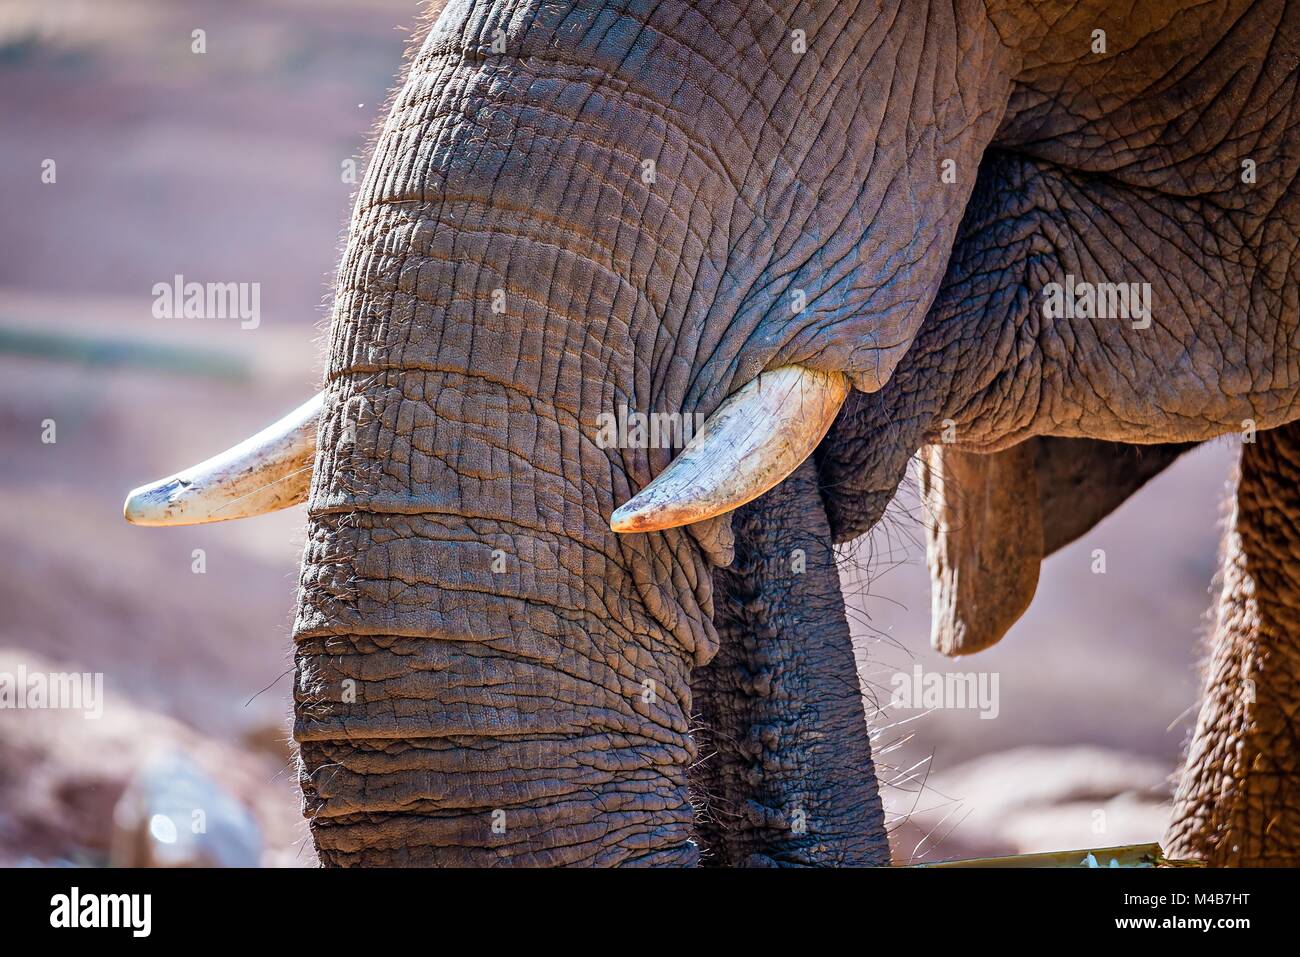 Elefante africano (Loxodonta Africana), la hora de la comida en el zoo. Foto de stock